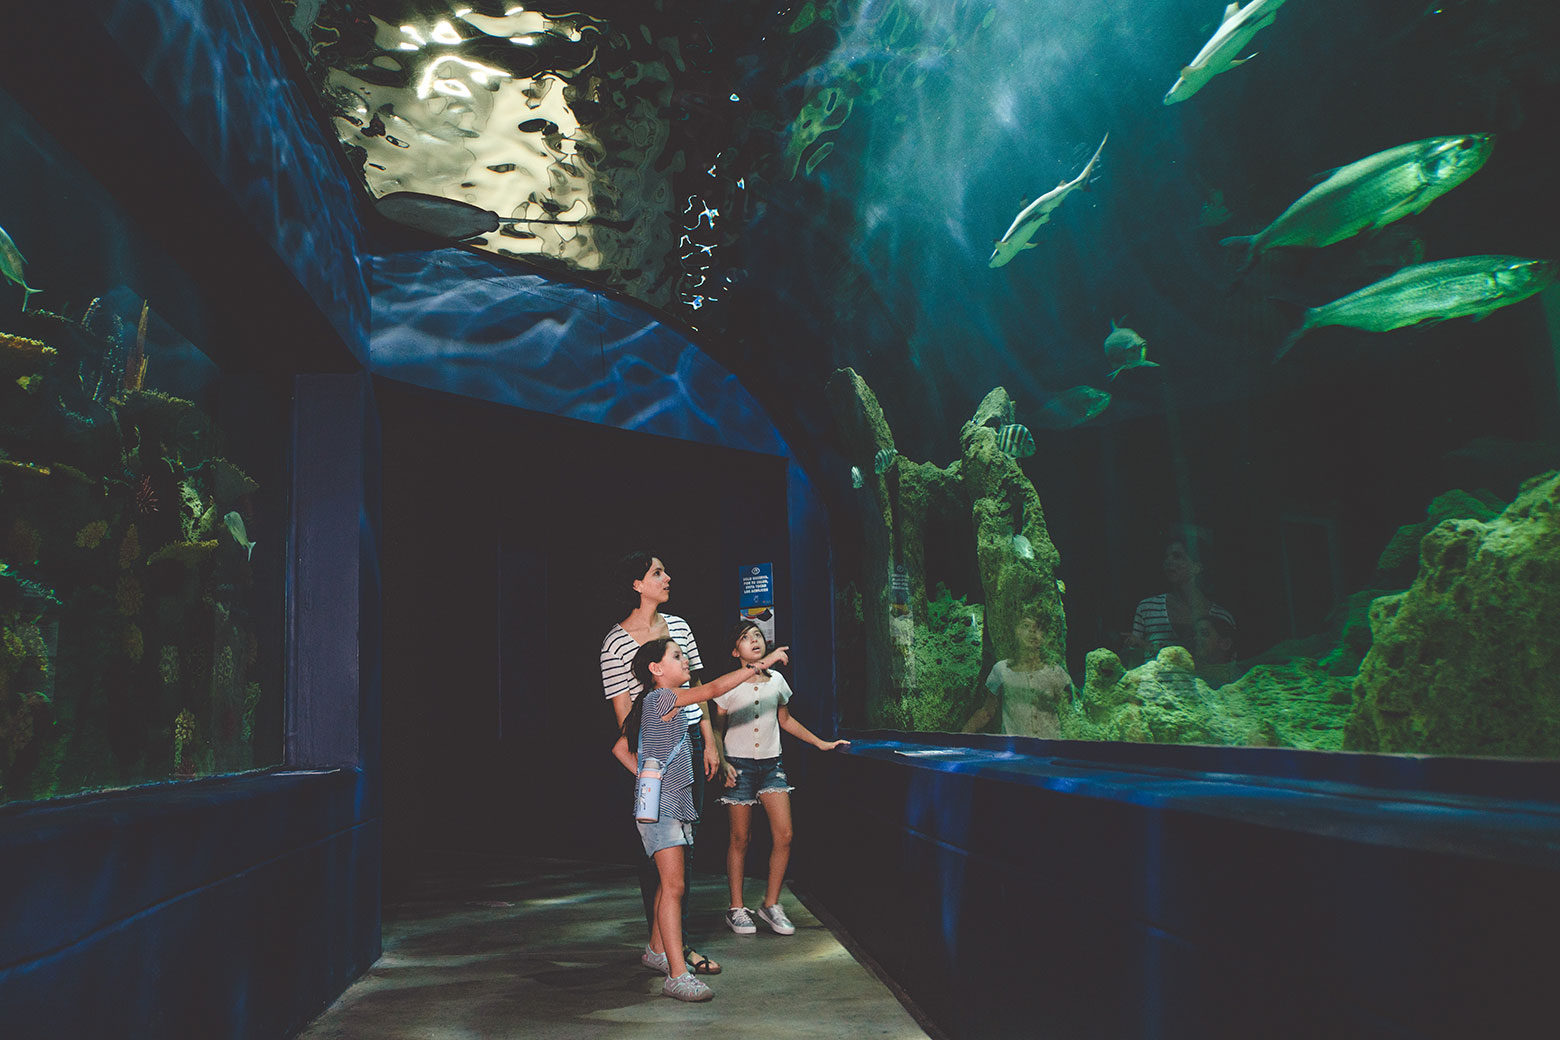 Interior of Ripley’s Aquarium Gatlinburg.